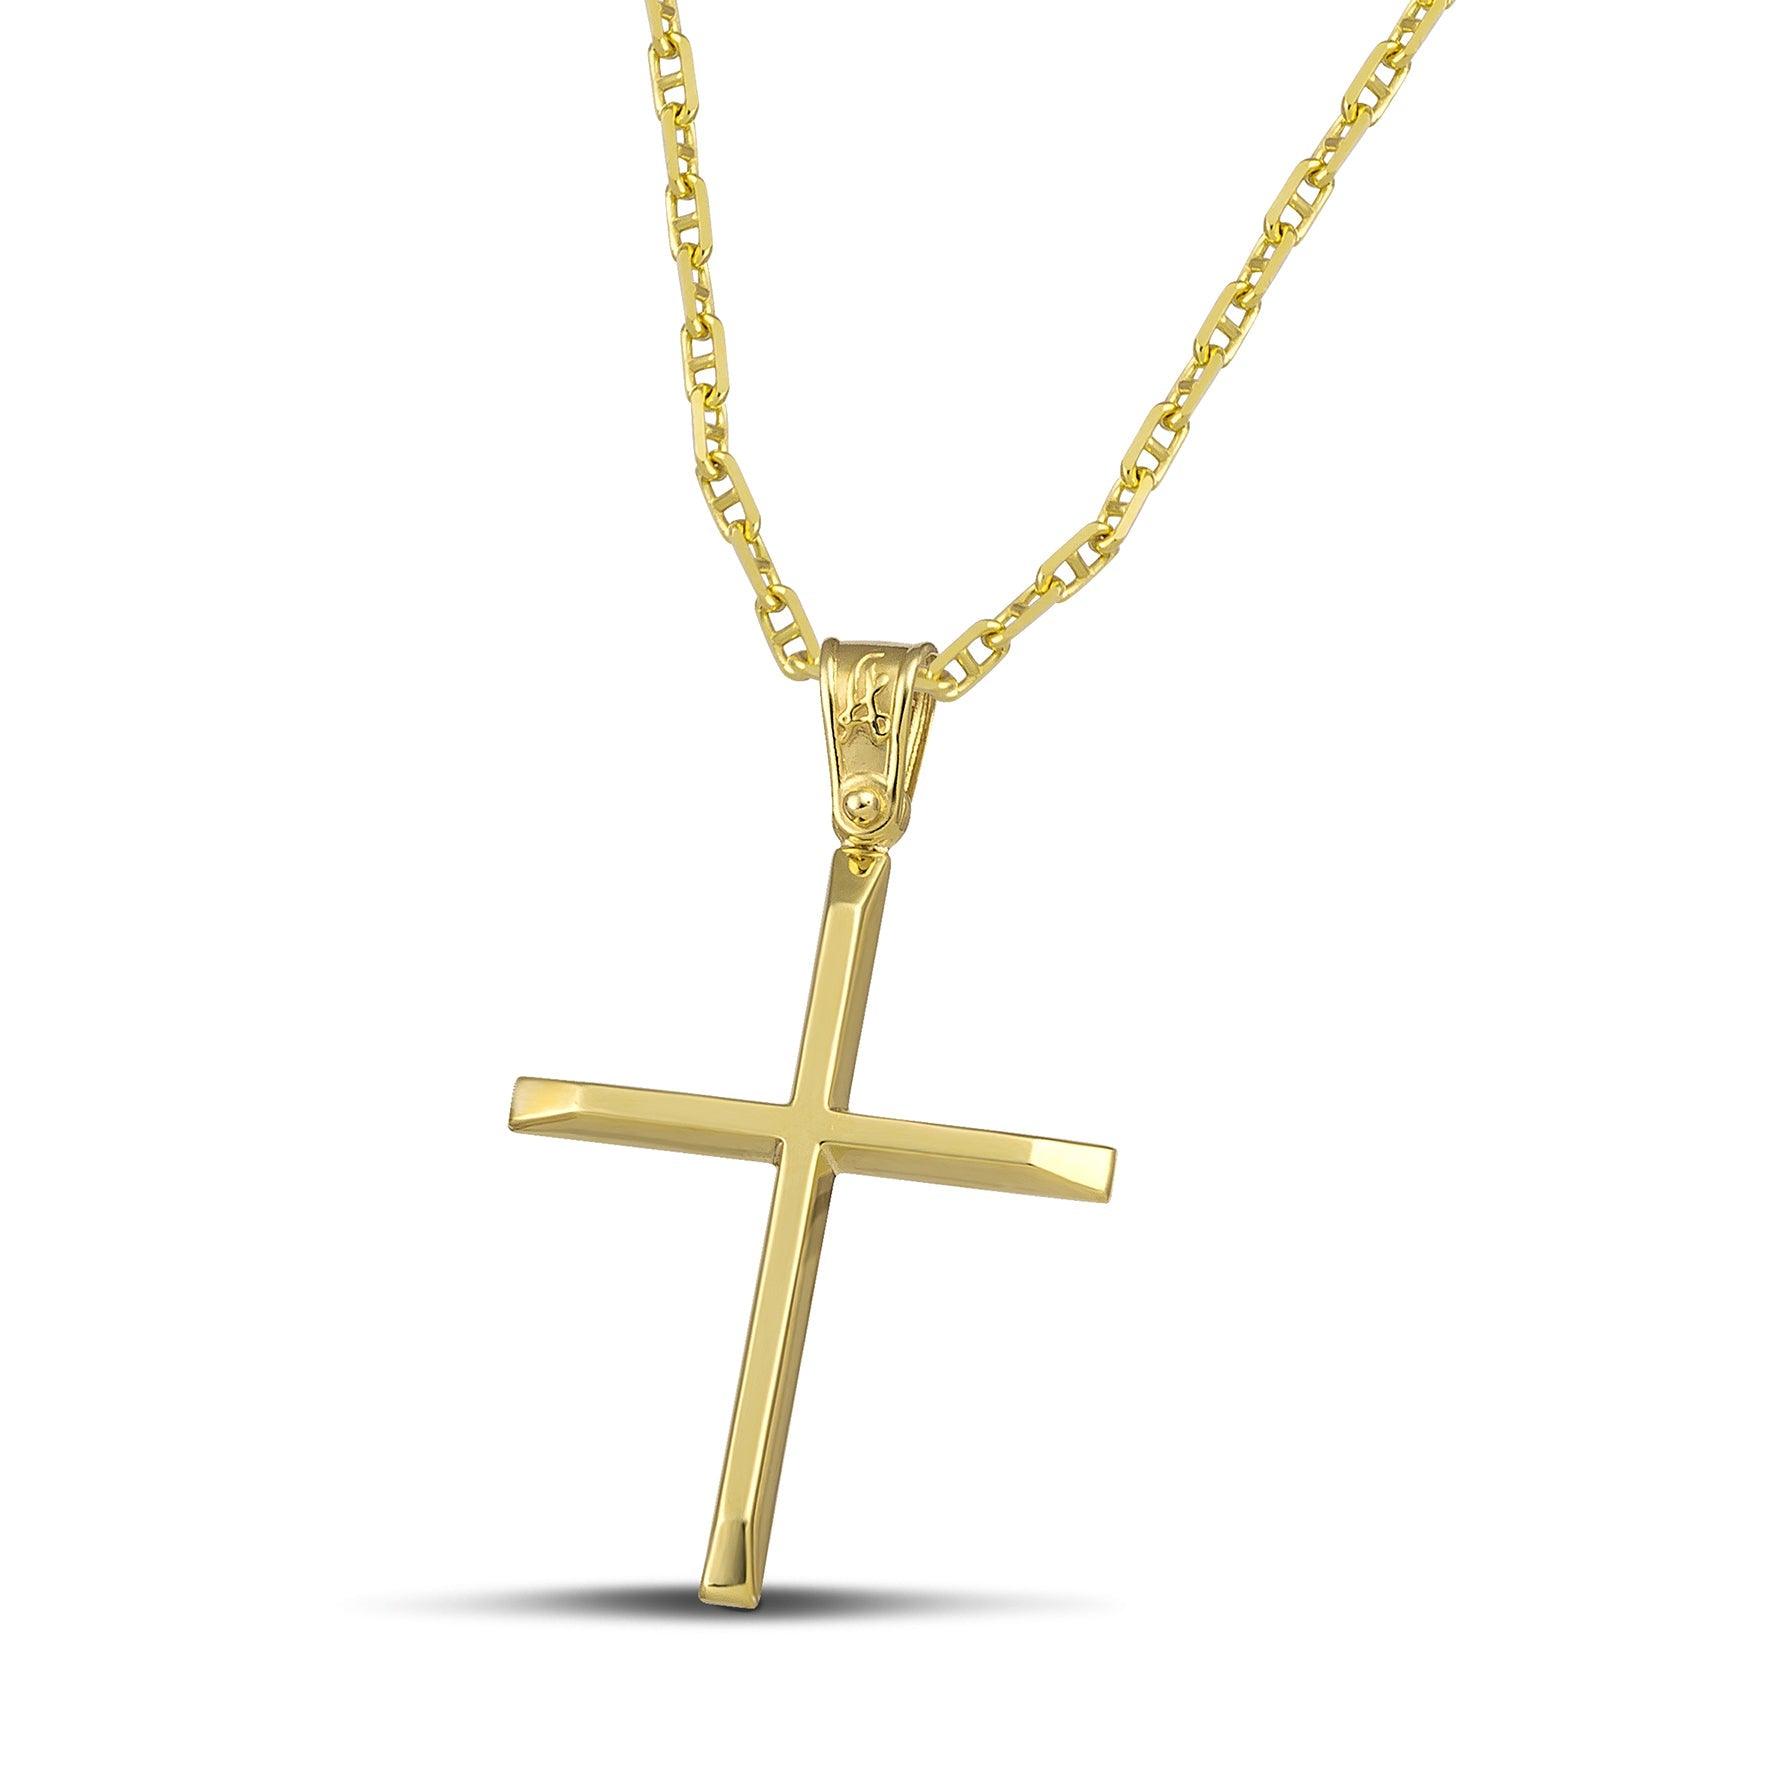 Χρυσός βαφτιστικός σταυρός Κ14 για γυναίκα. Χειροποίητο κόσμημα με ελαφριά κατασκευή, περασμένο σε χρυσή αλυσίδα «Θ».